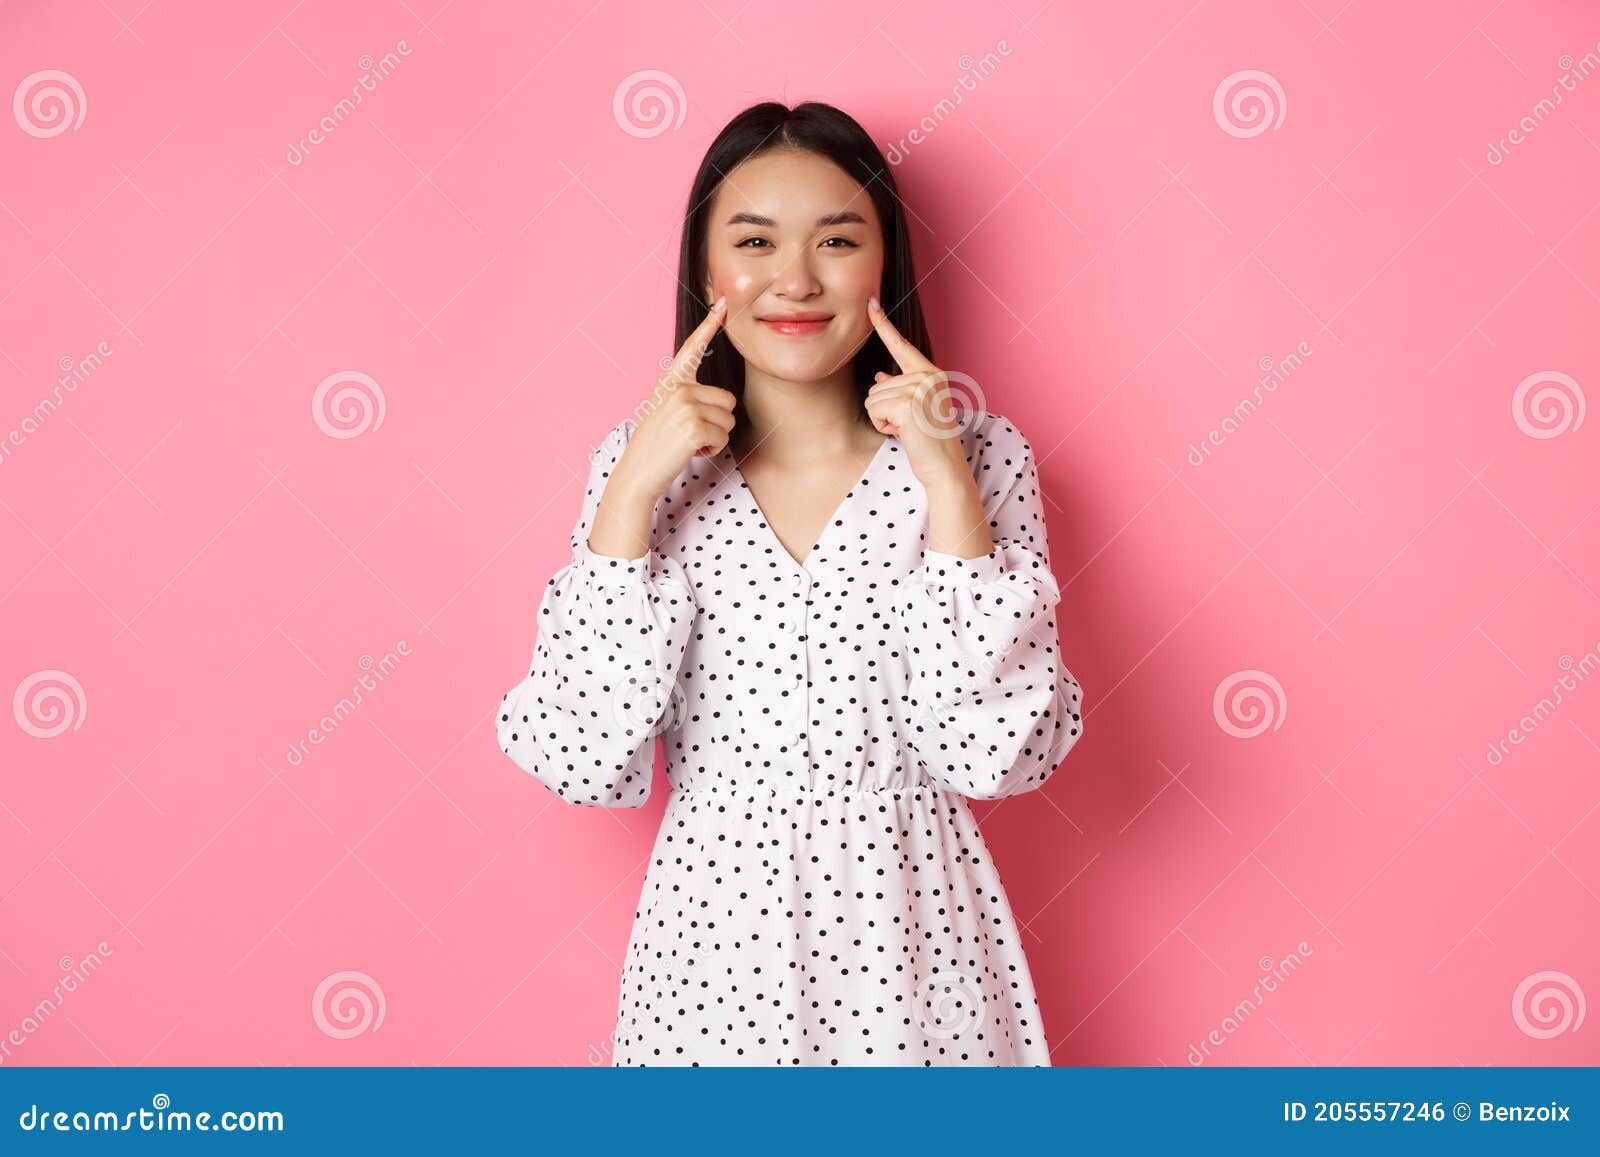 Cute Blushing Asian Girl Poking Cheeks, Smiling Happy at Camera ...